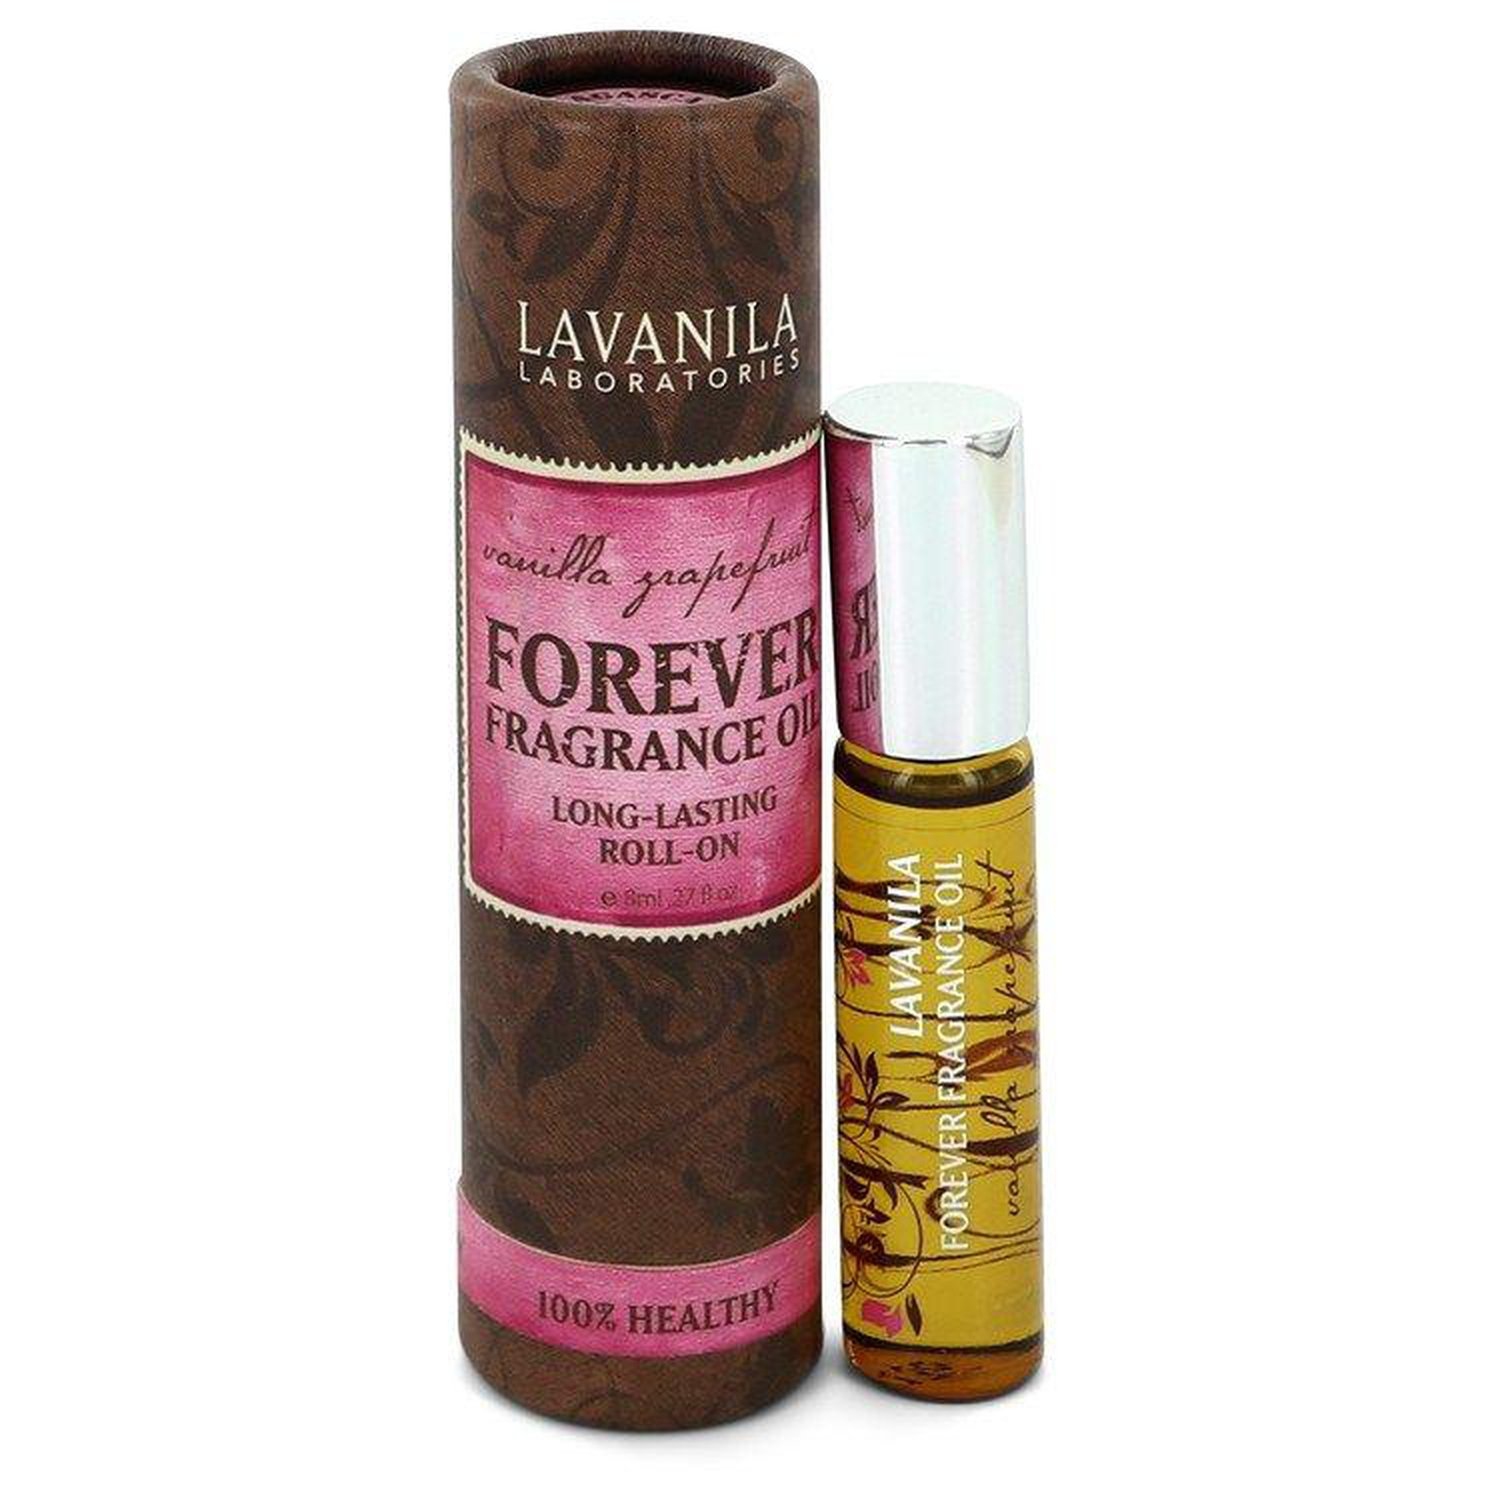 Forever Fragrance Oil - Vanilla Grapefruit by Lavanila for Women - 0.27 oz Roll-On (Mini)